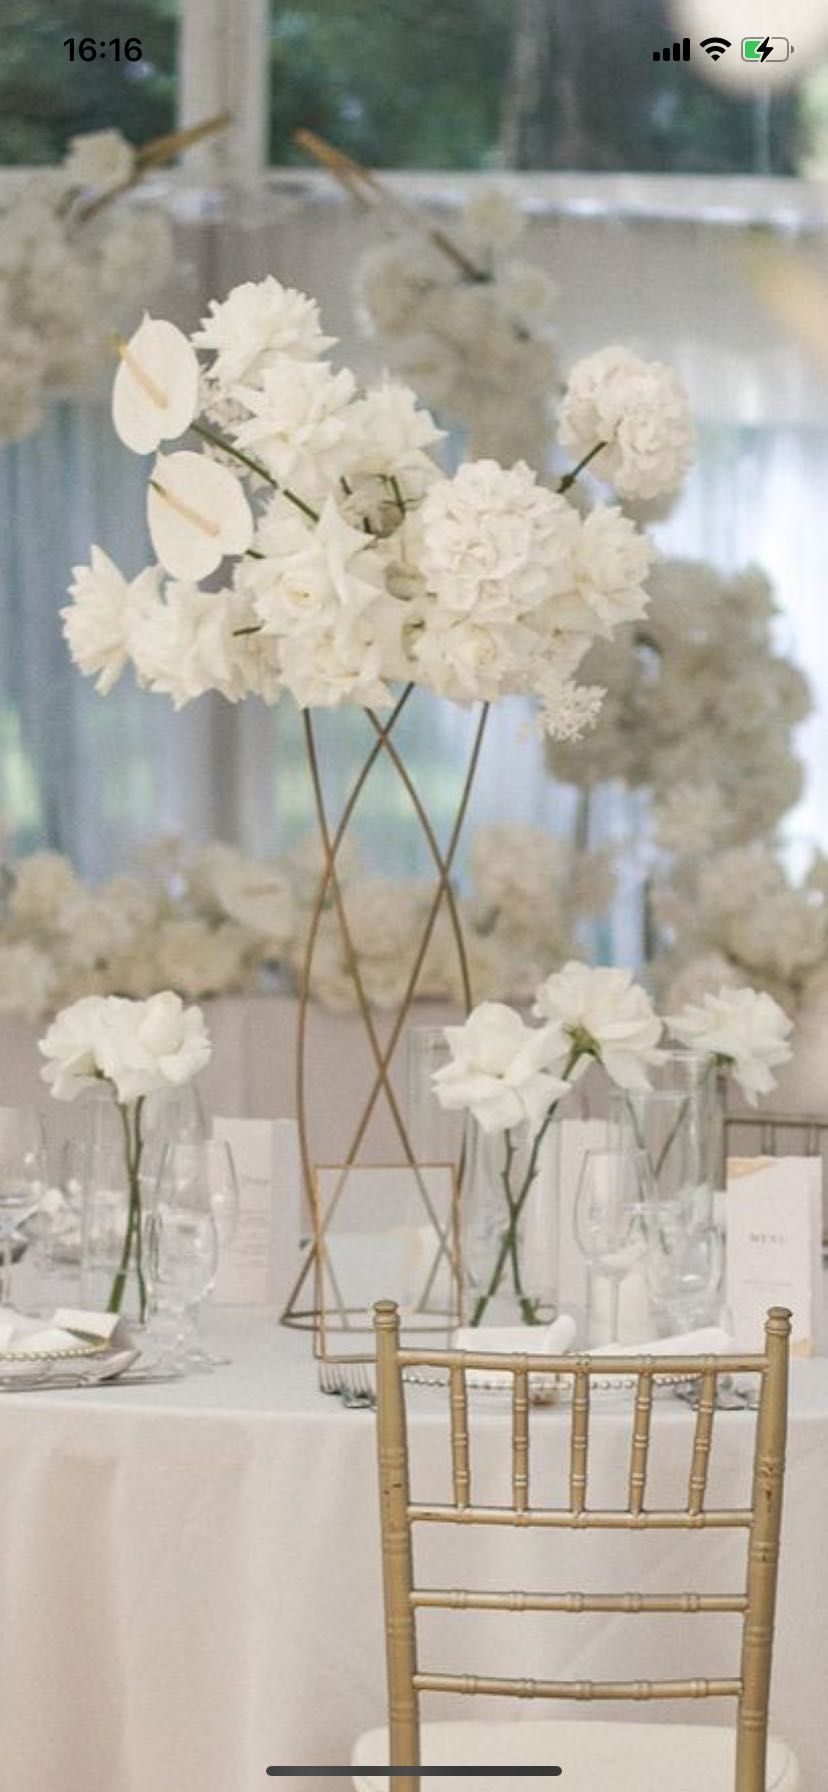 Stojak na kwiaty kwietnik dekoracja wesele